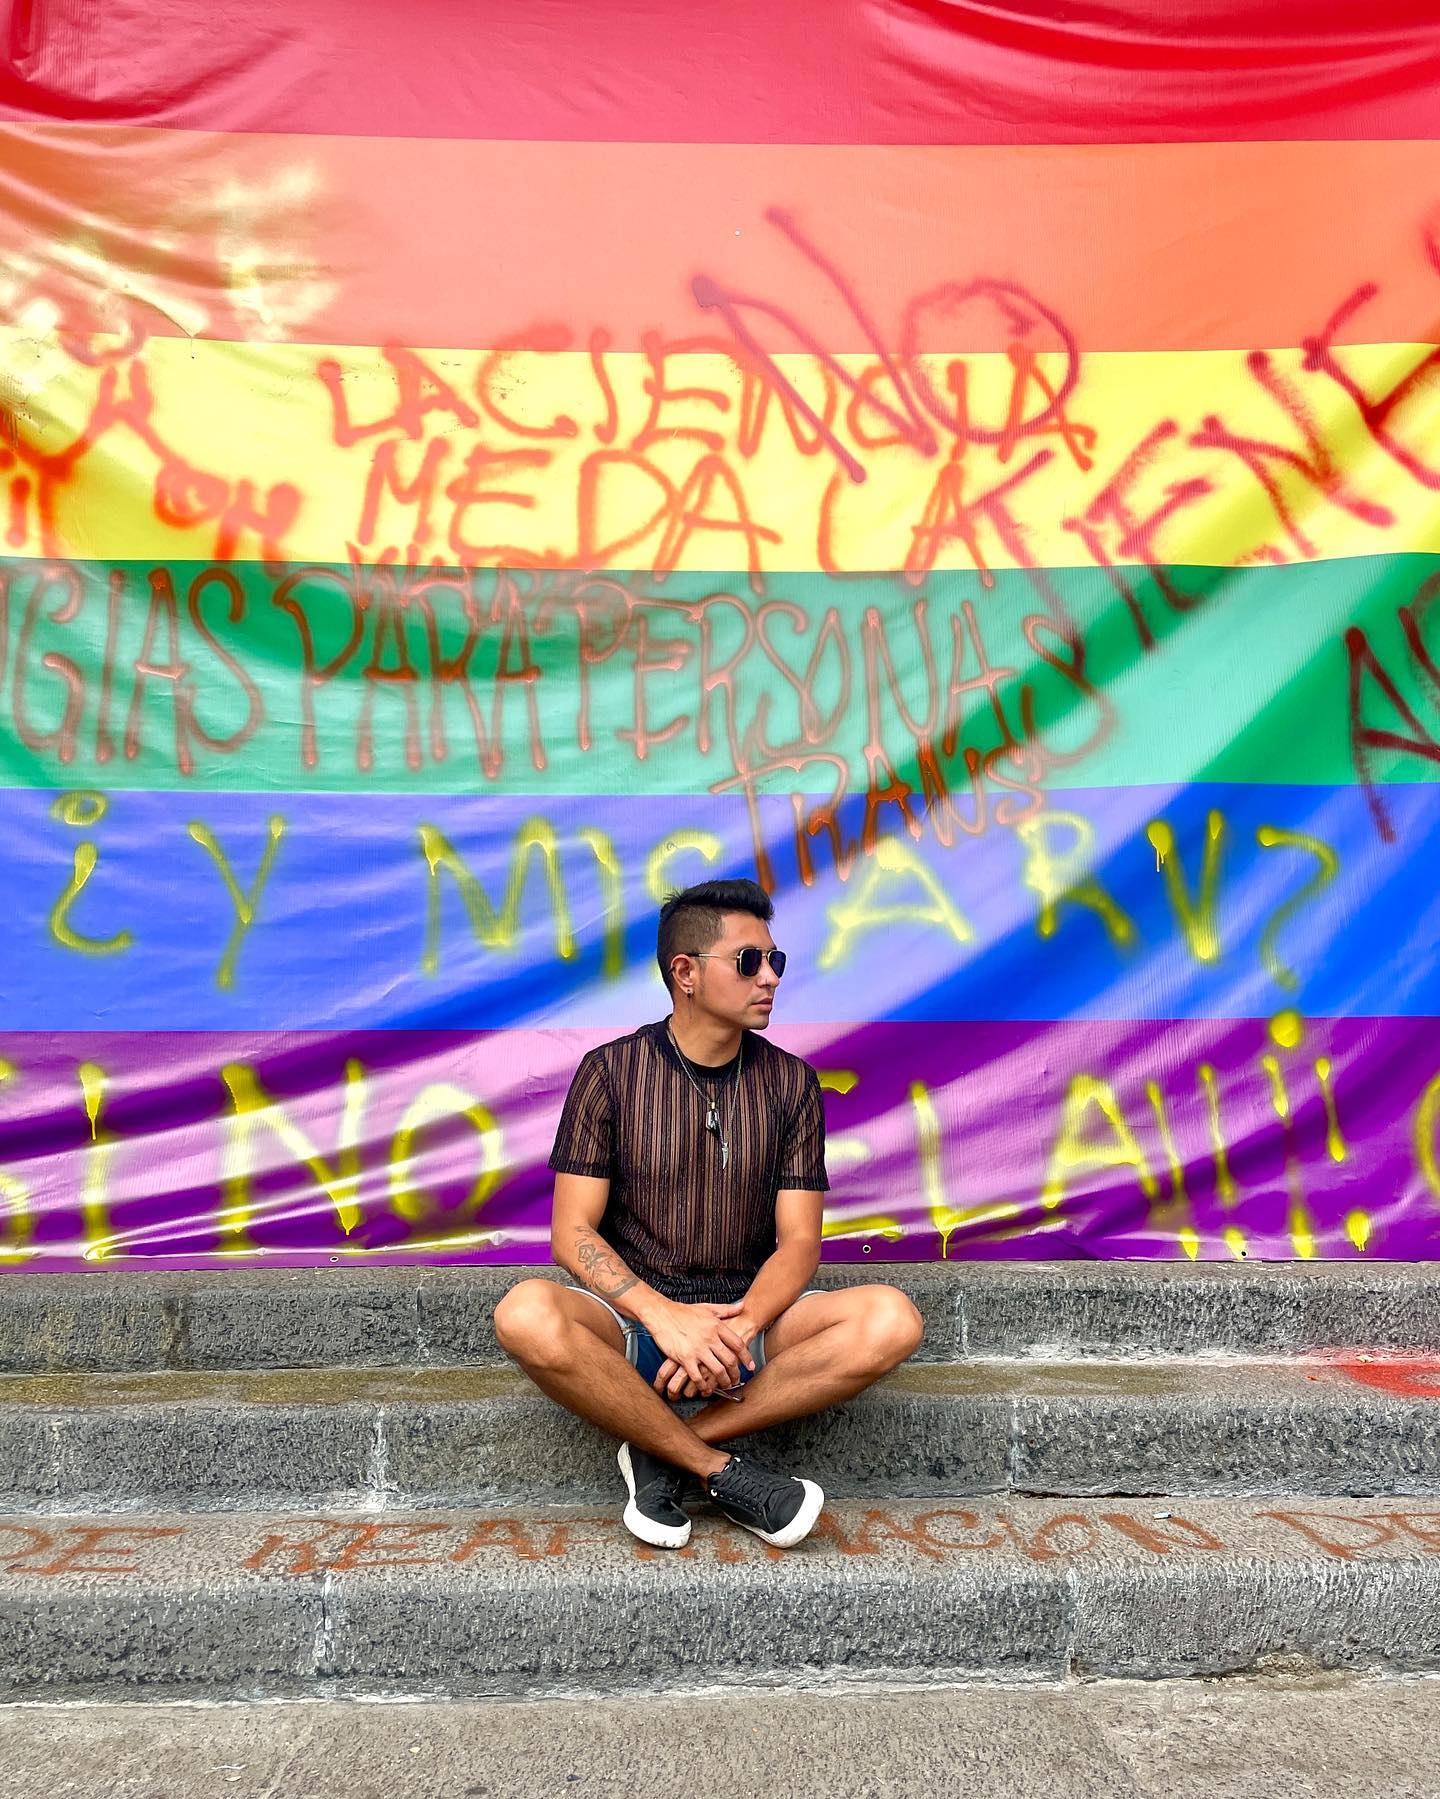 “He luchado tanto por ser diferente, ¡sólo para demostrar que en el fondo todos somos iguales!” @gloriatrevi 
.
.
.
#pride #pridemonth #pride🌈 #loveislove #loveislove🌈 #pridecdmx #orgullo #todosmemiran #pride2022 #marchalgbt #marchadelorgullo #happypride